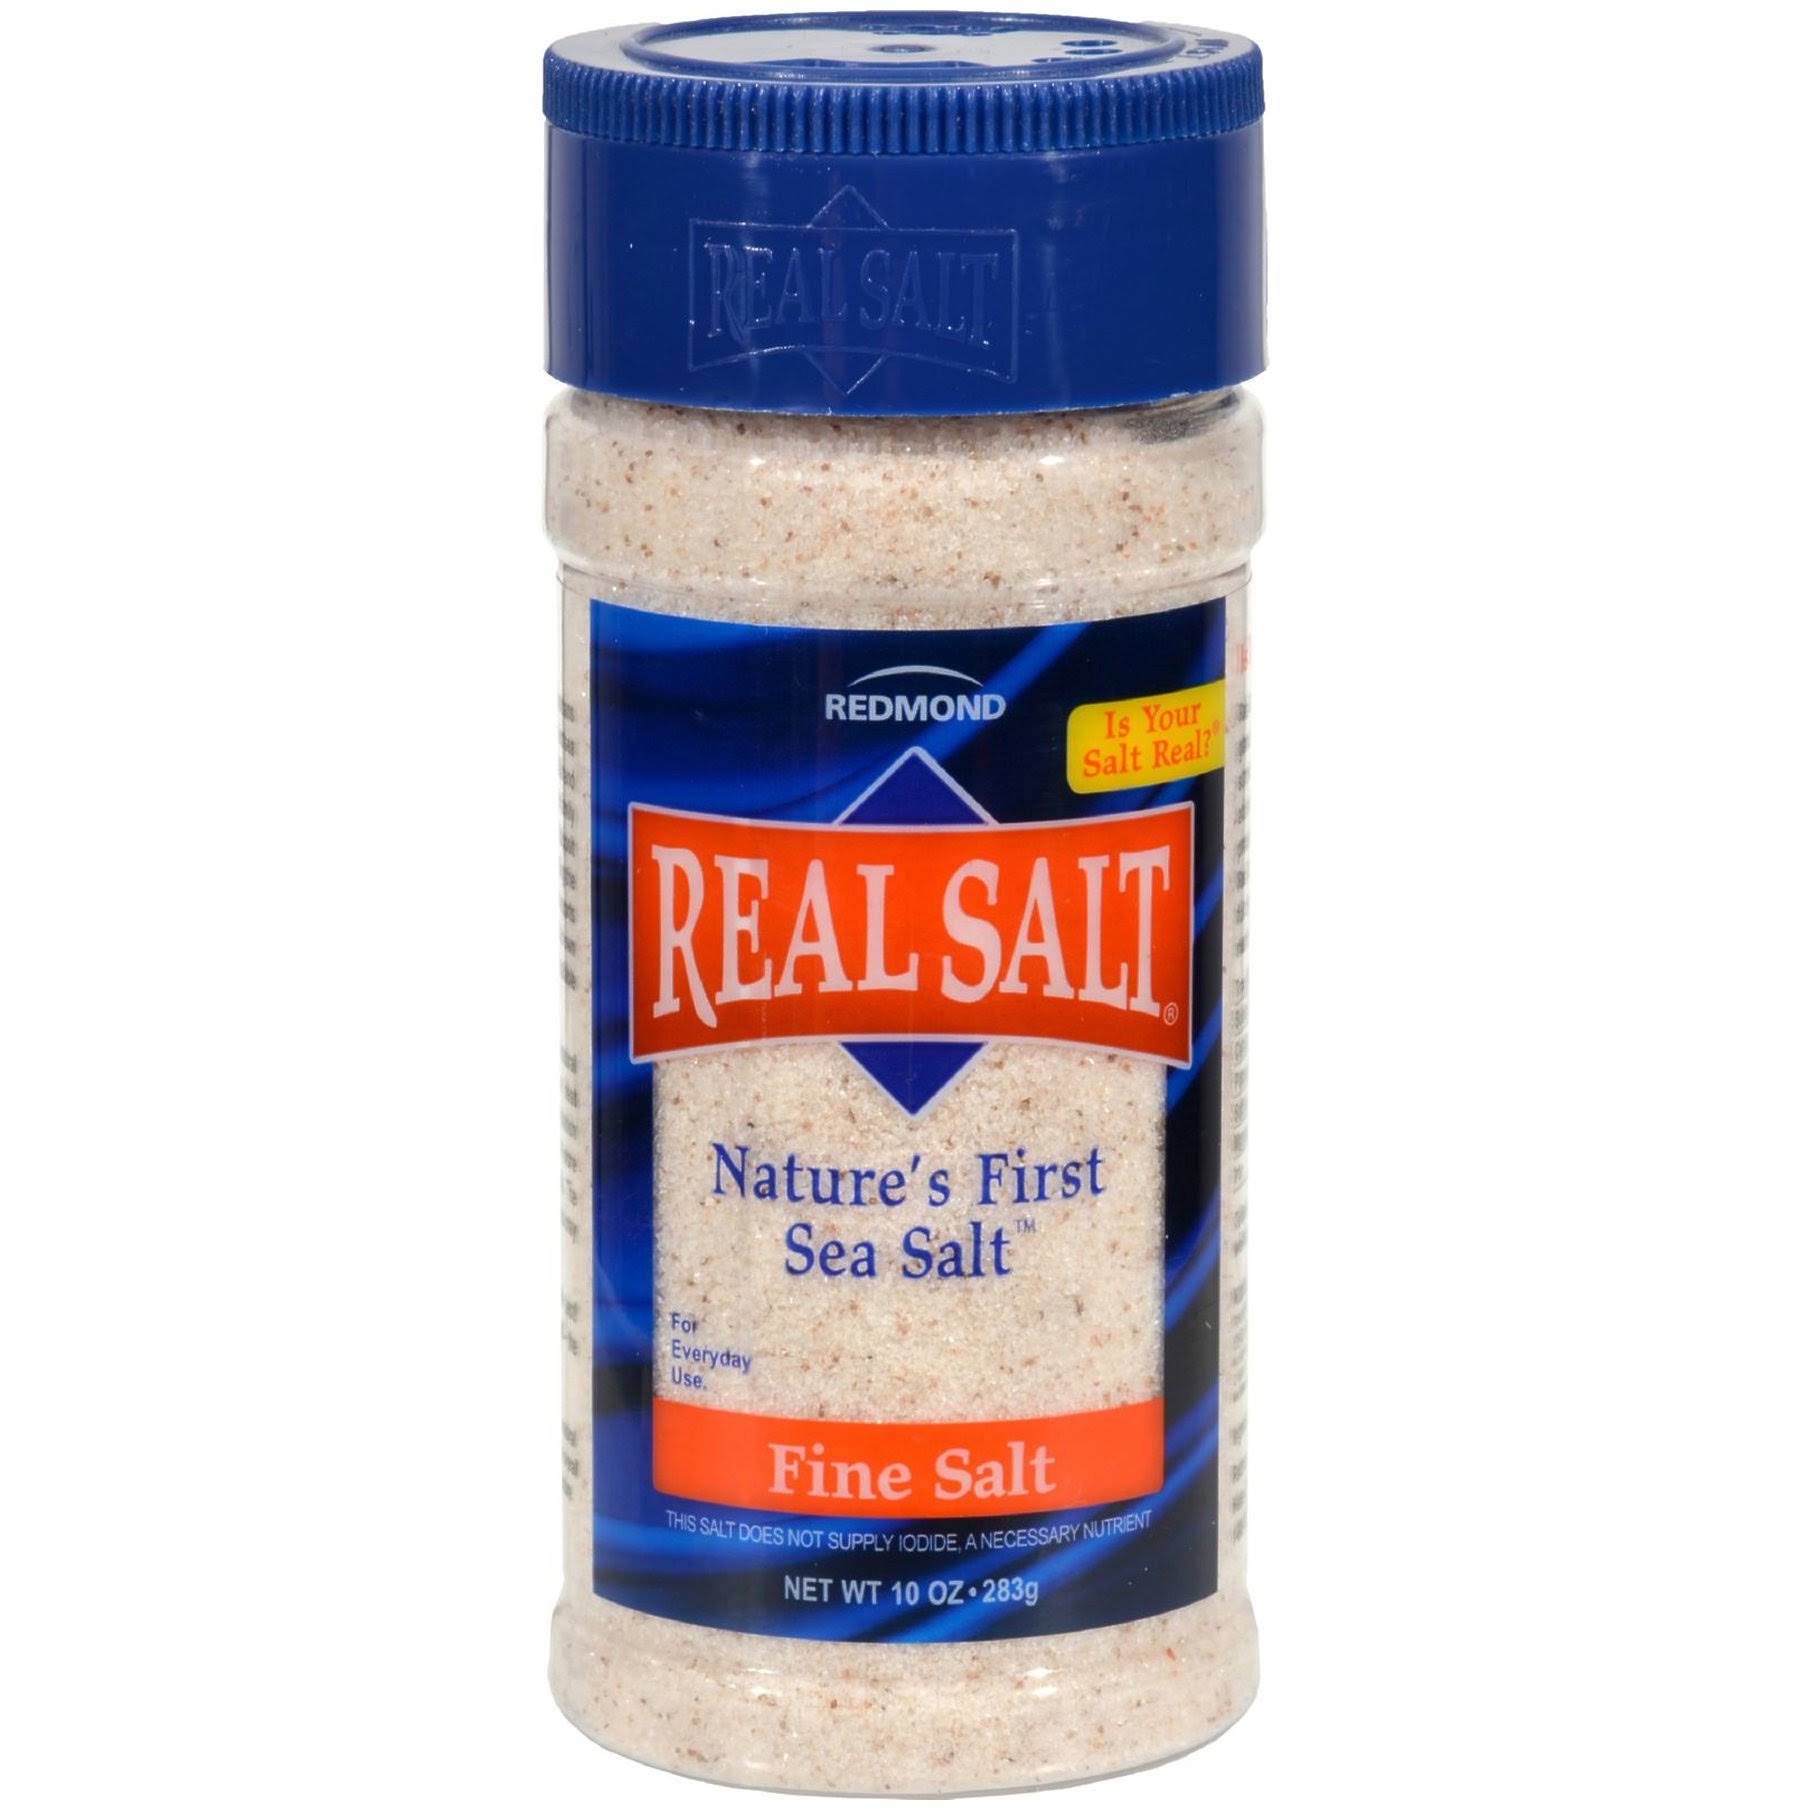 Real Salt Fine Salt - 10 oz